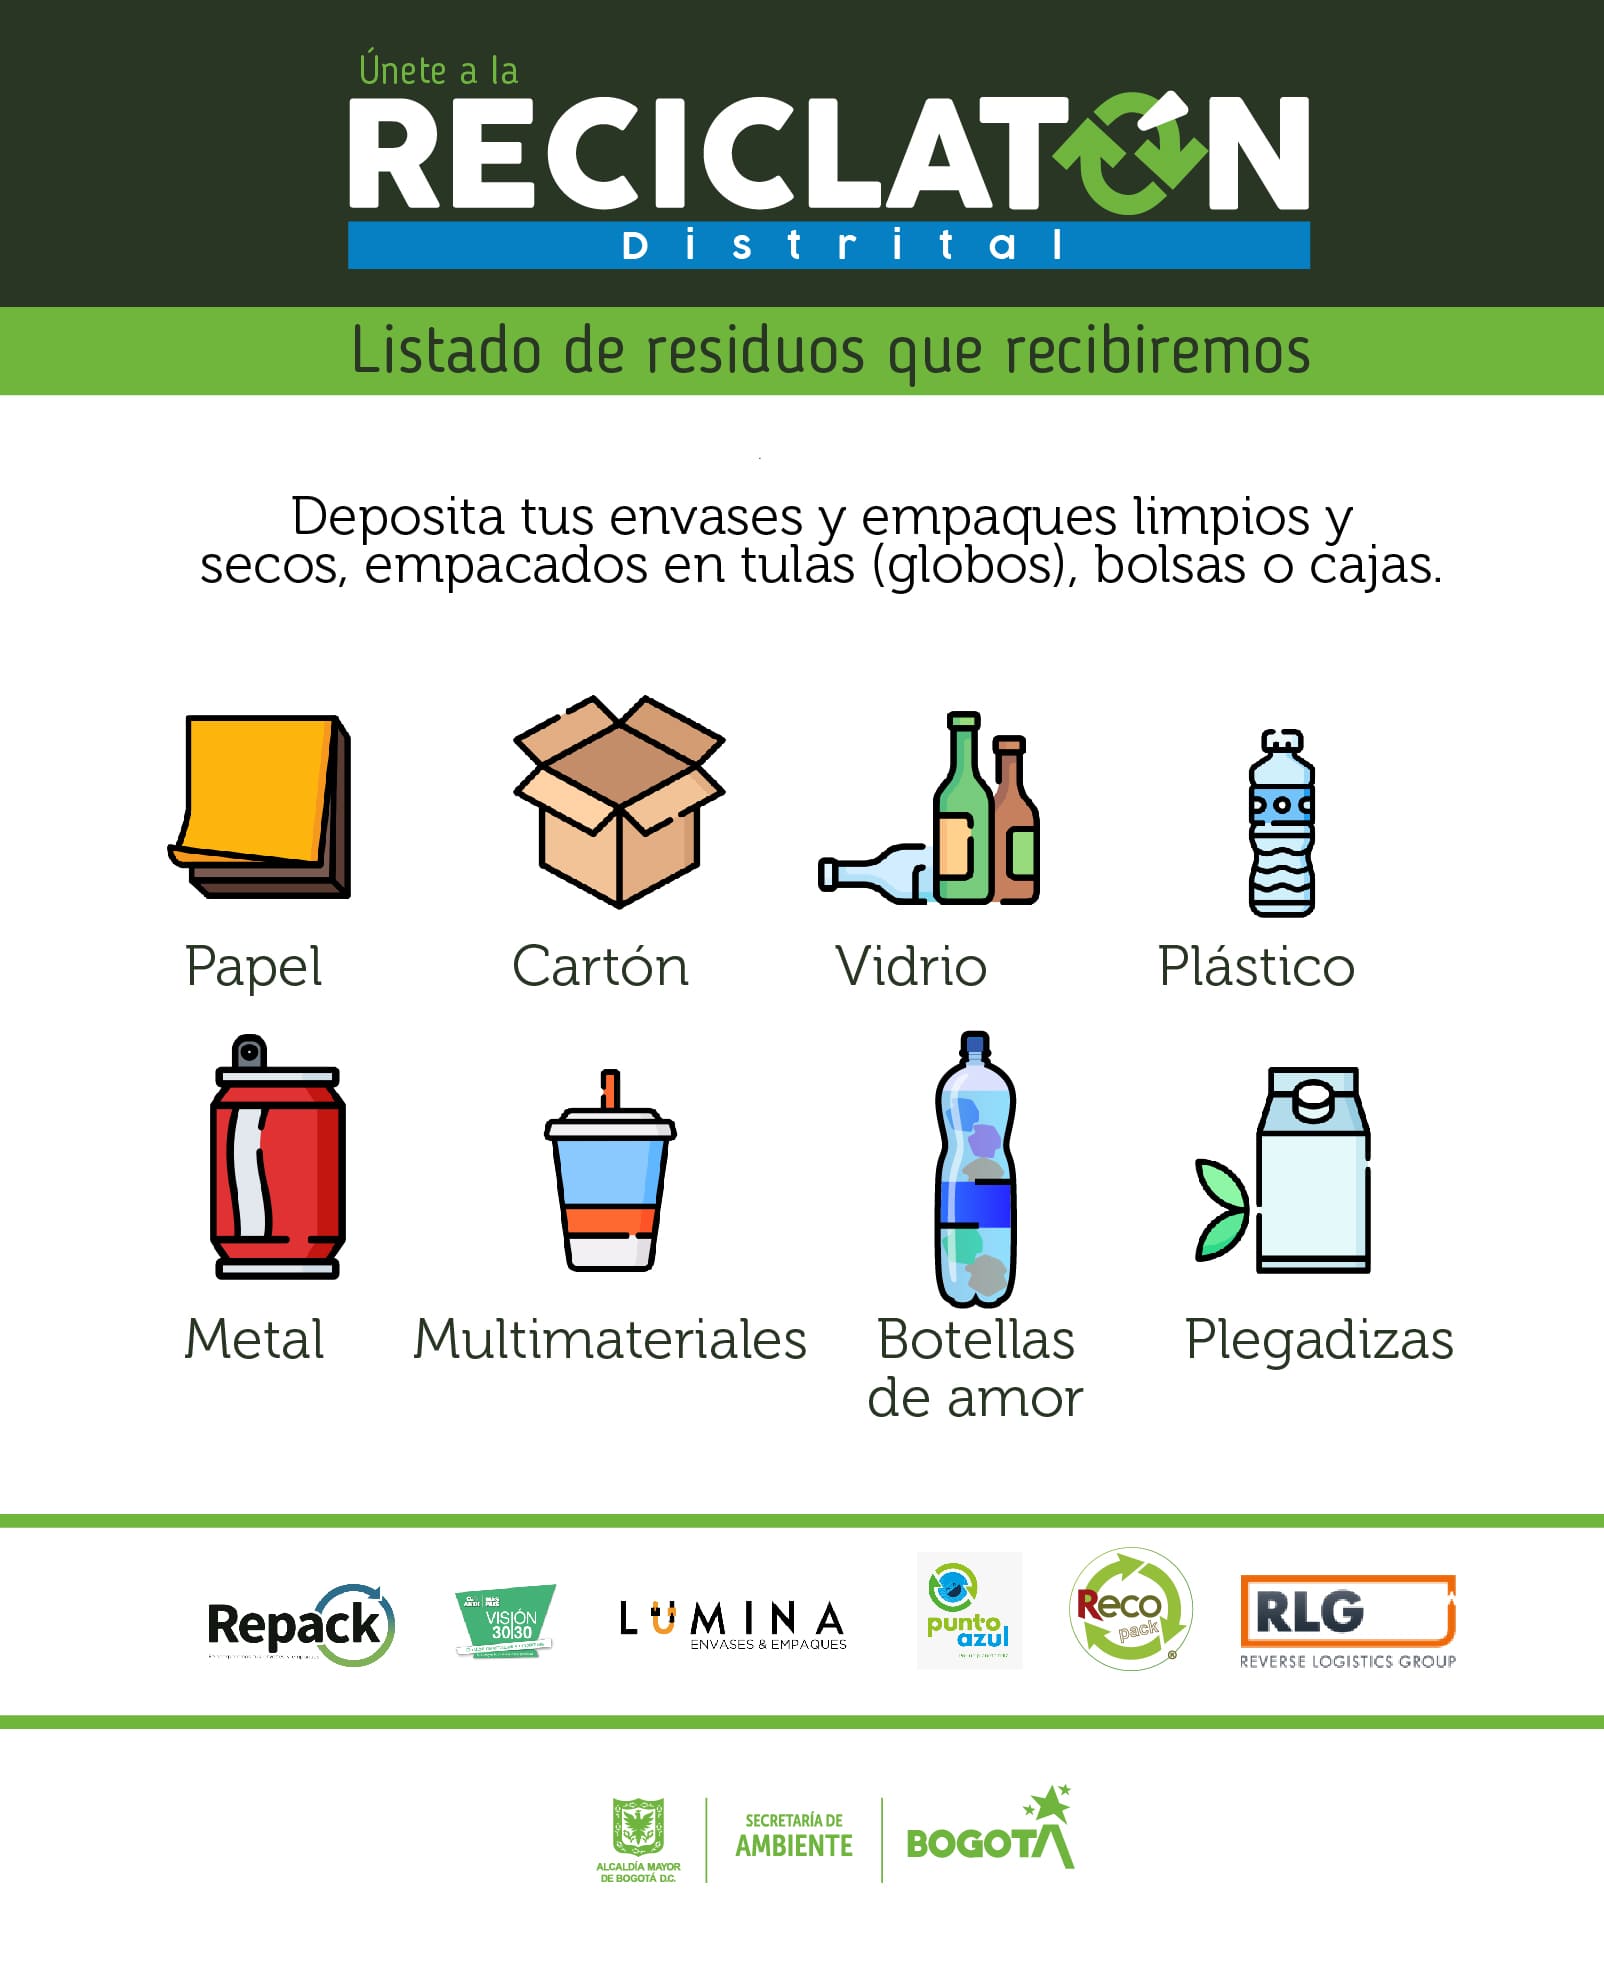 lista de residuos que recibirán en la reciclatón: papel, cartón, vidrio, plástico, entre otros